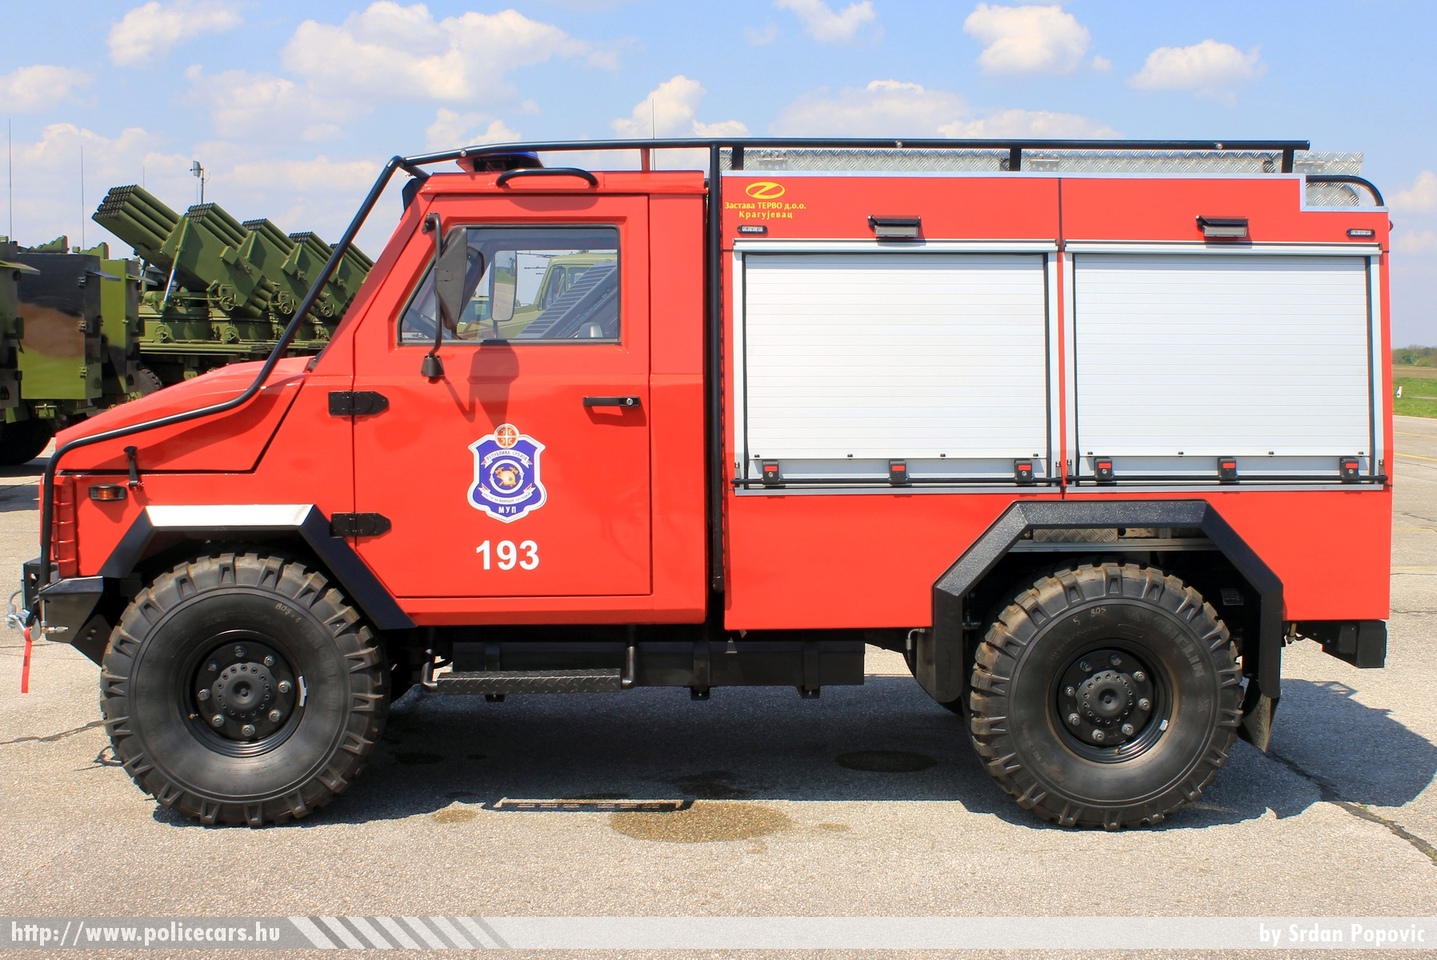 Zastava NTV, fotó: Srdan Popovic
Keywords: szerb Szerbia tûzoltóság tûzoltó tûzoltóautó Serbia serbian fire firetruck